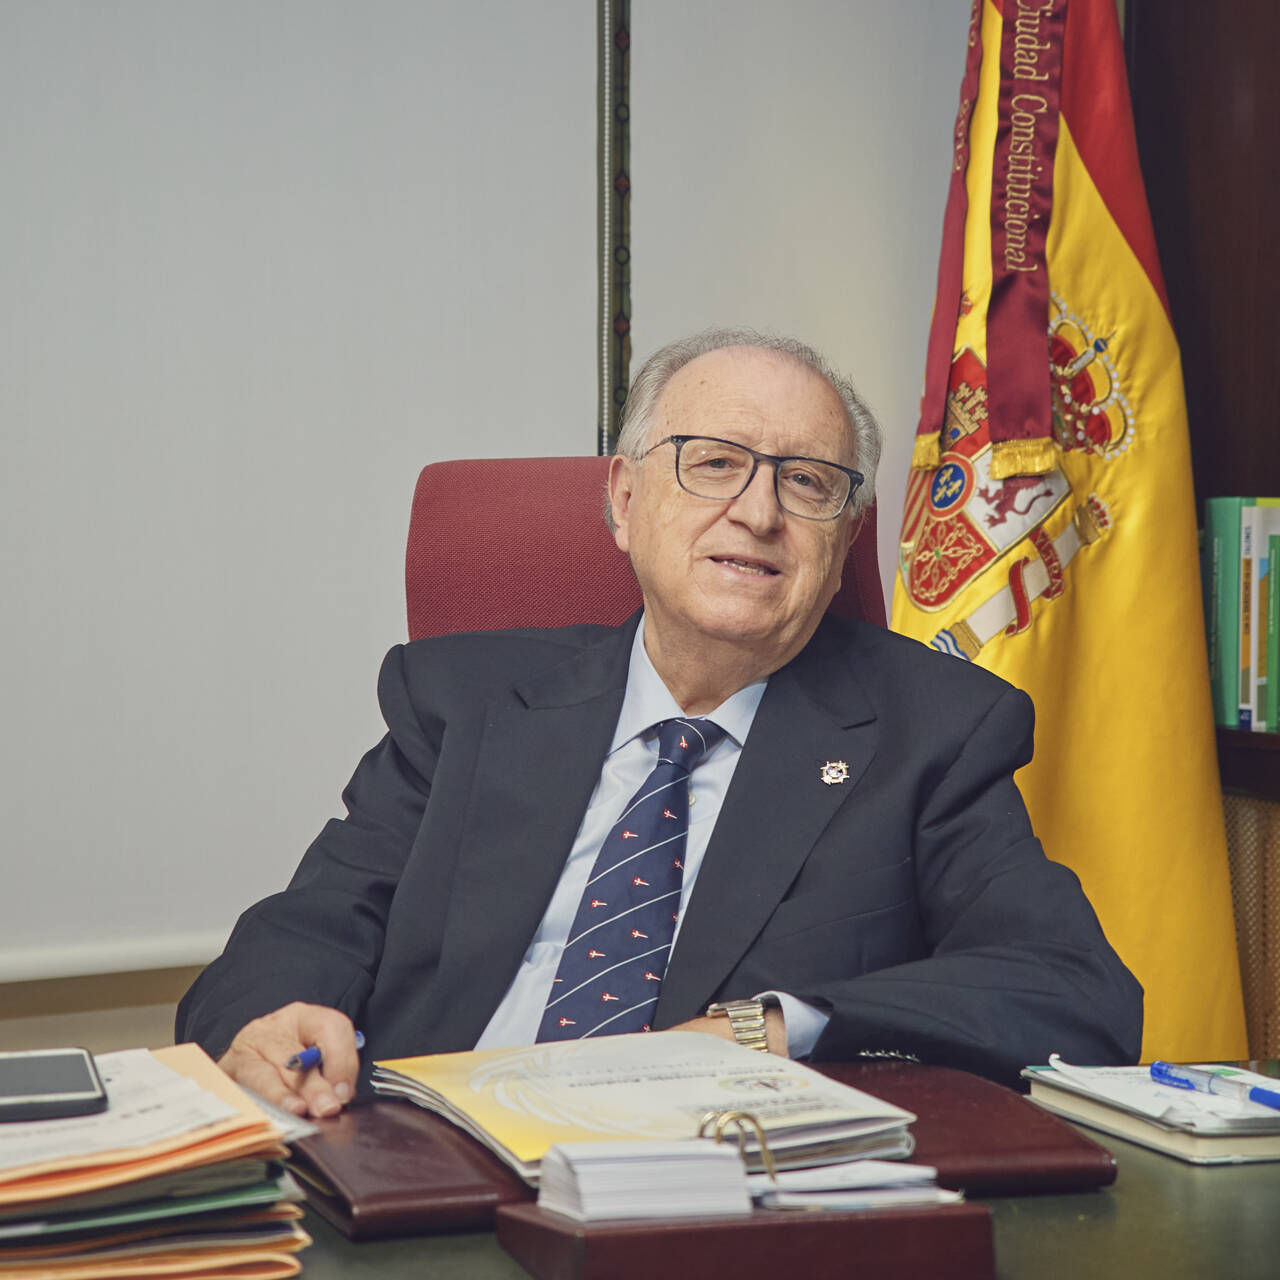 José Blas Fernández Sánchez